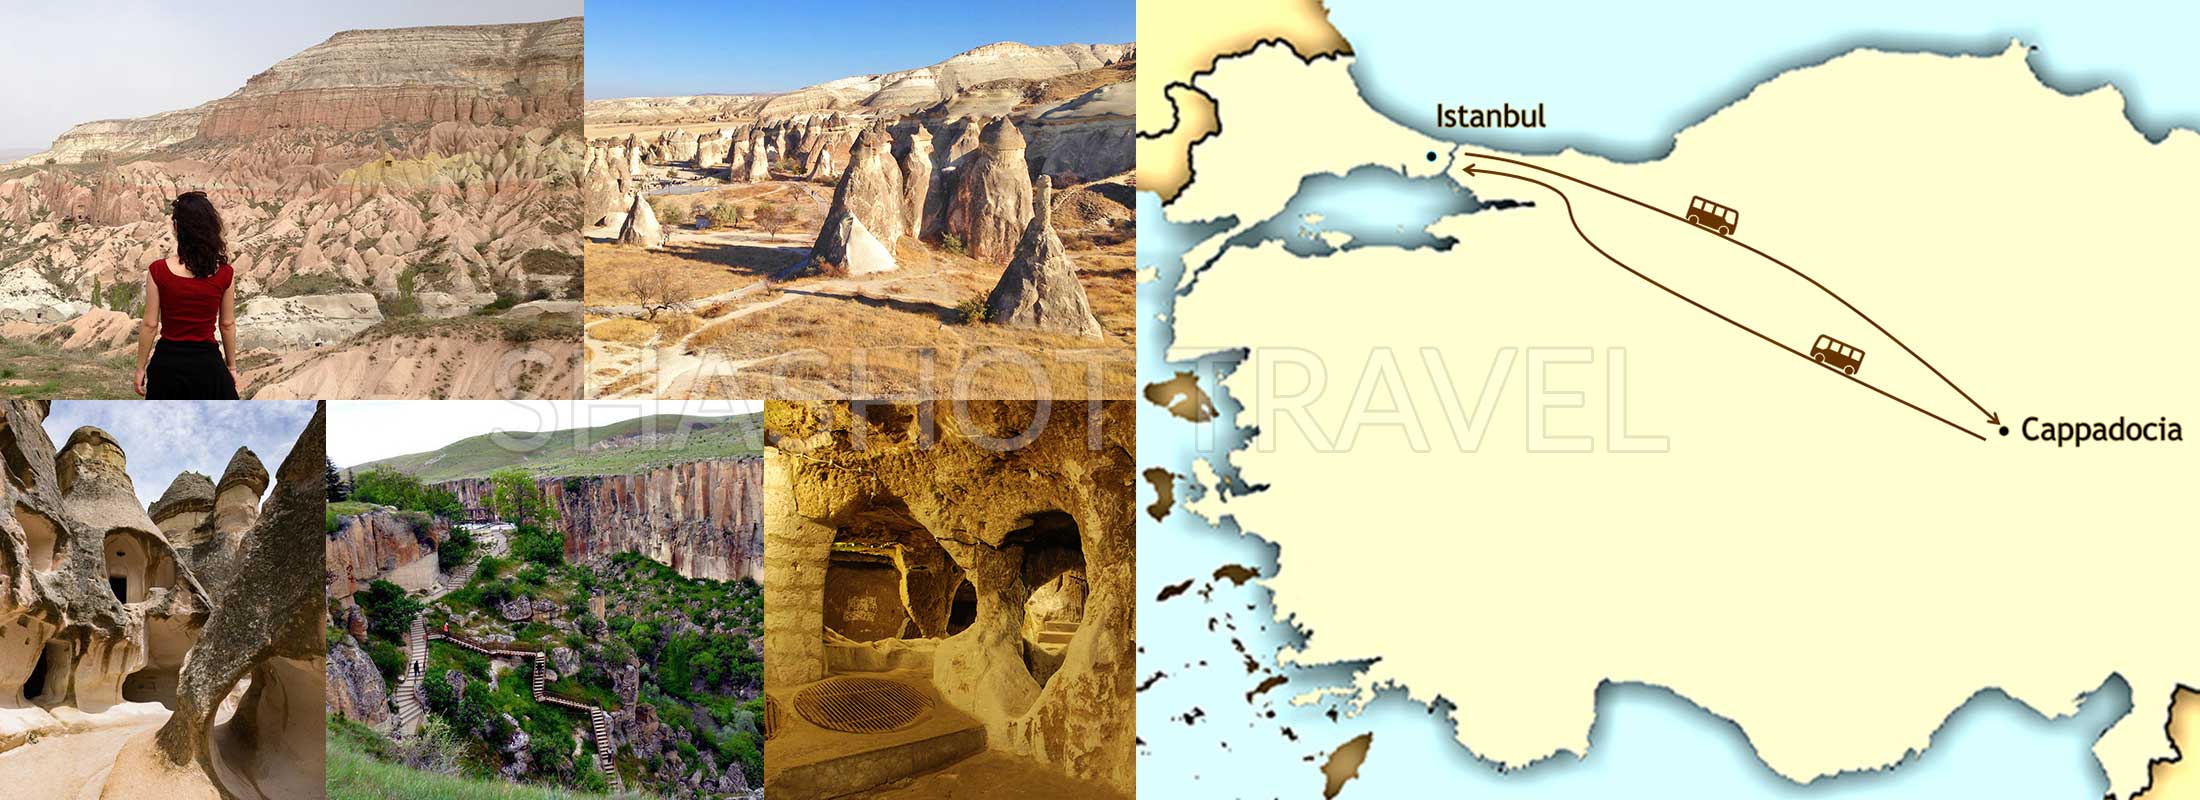 3-days-cappadocia-tours-turkey-goreme